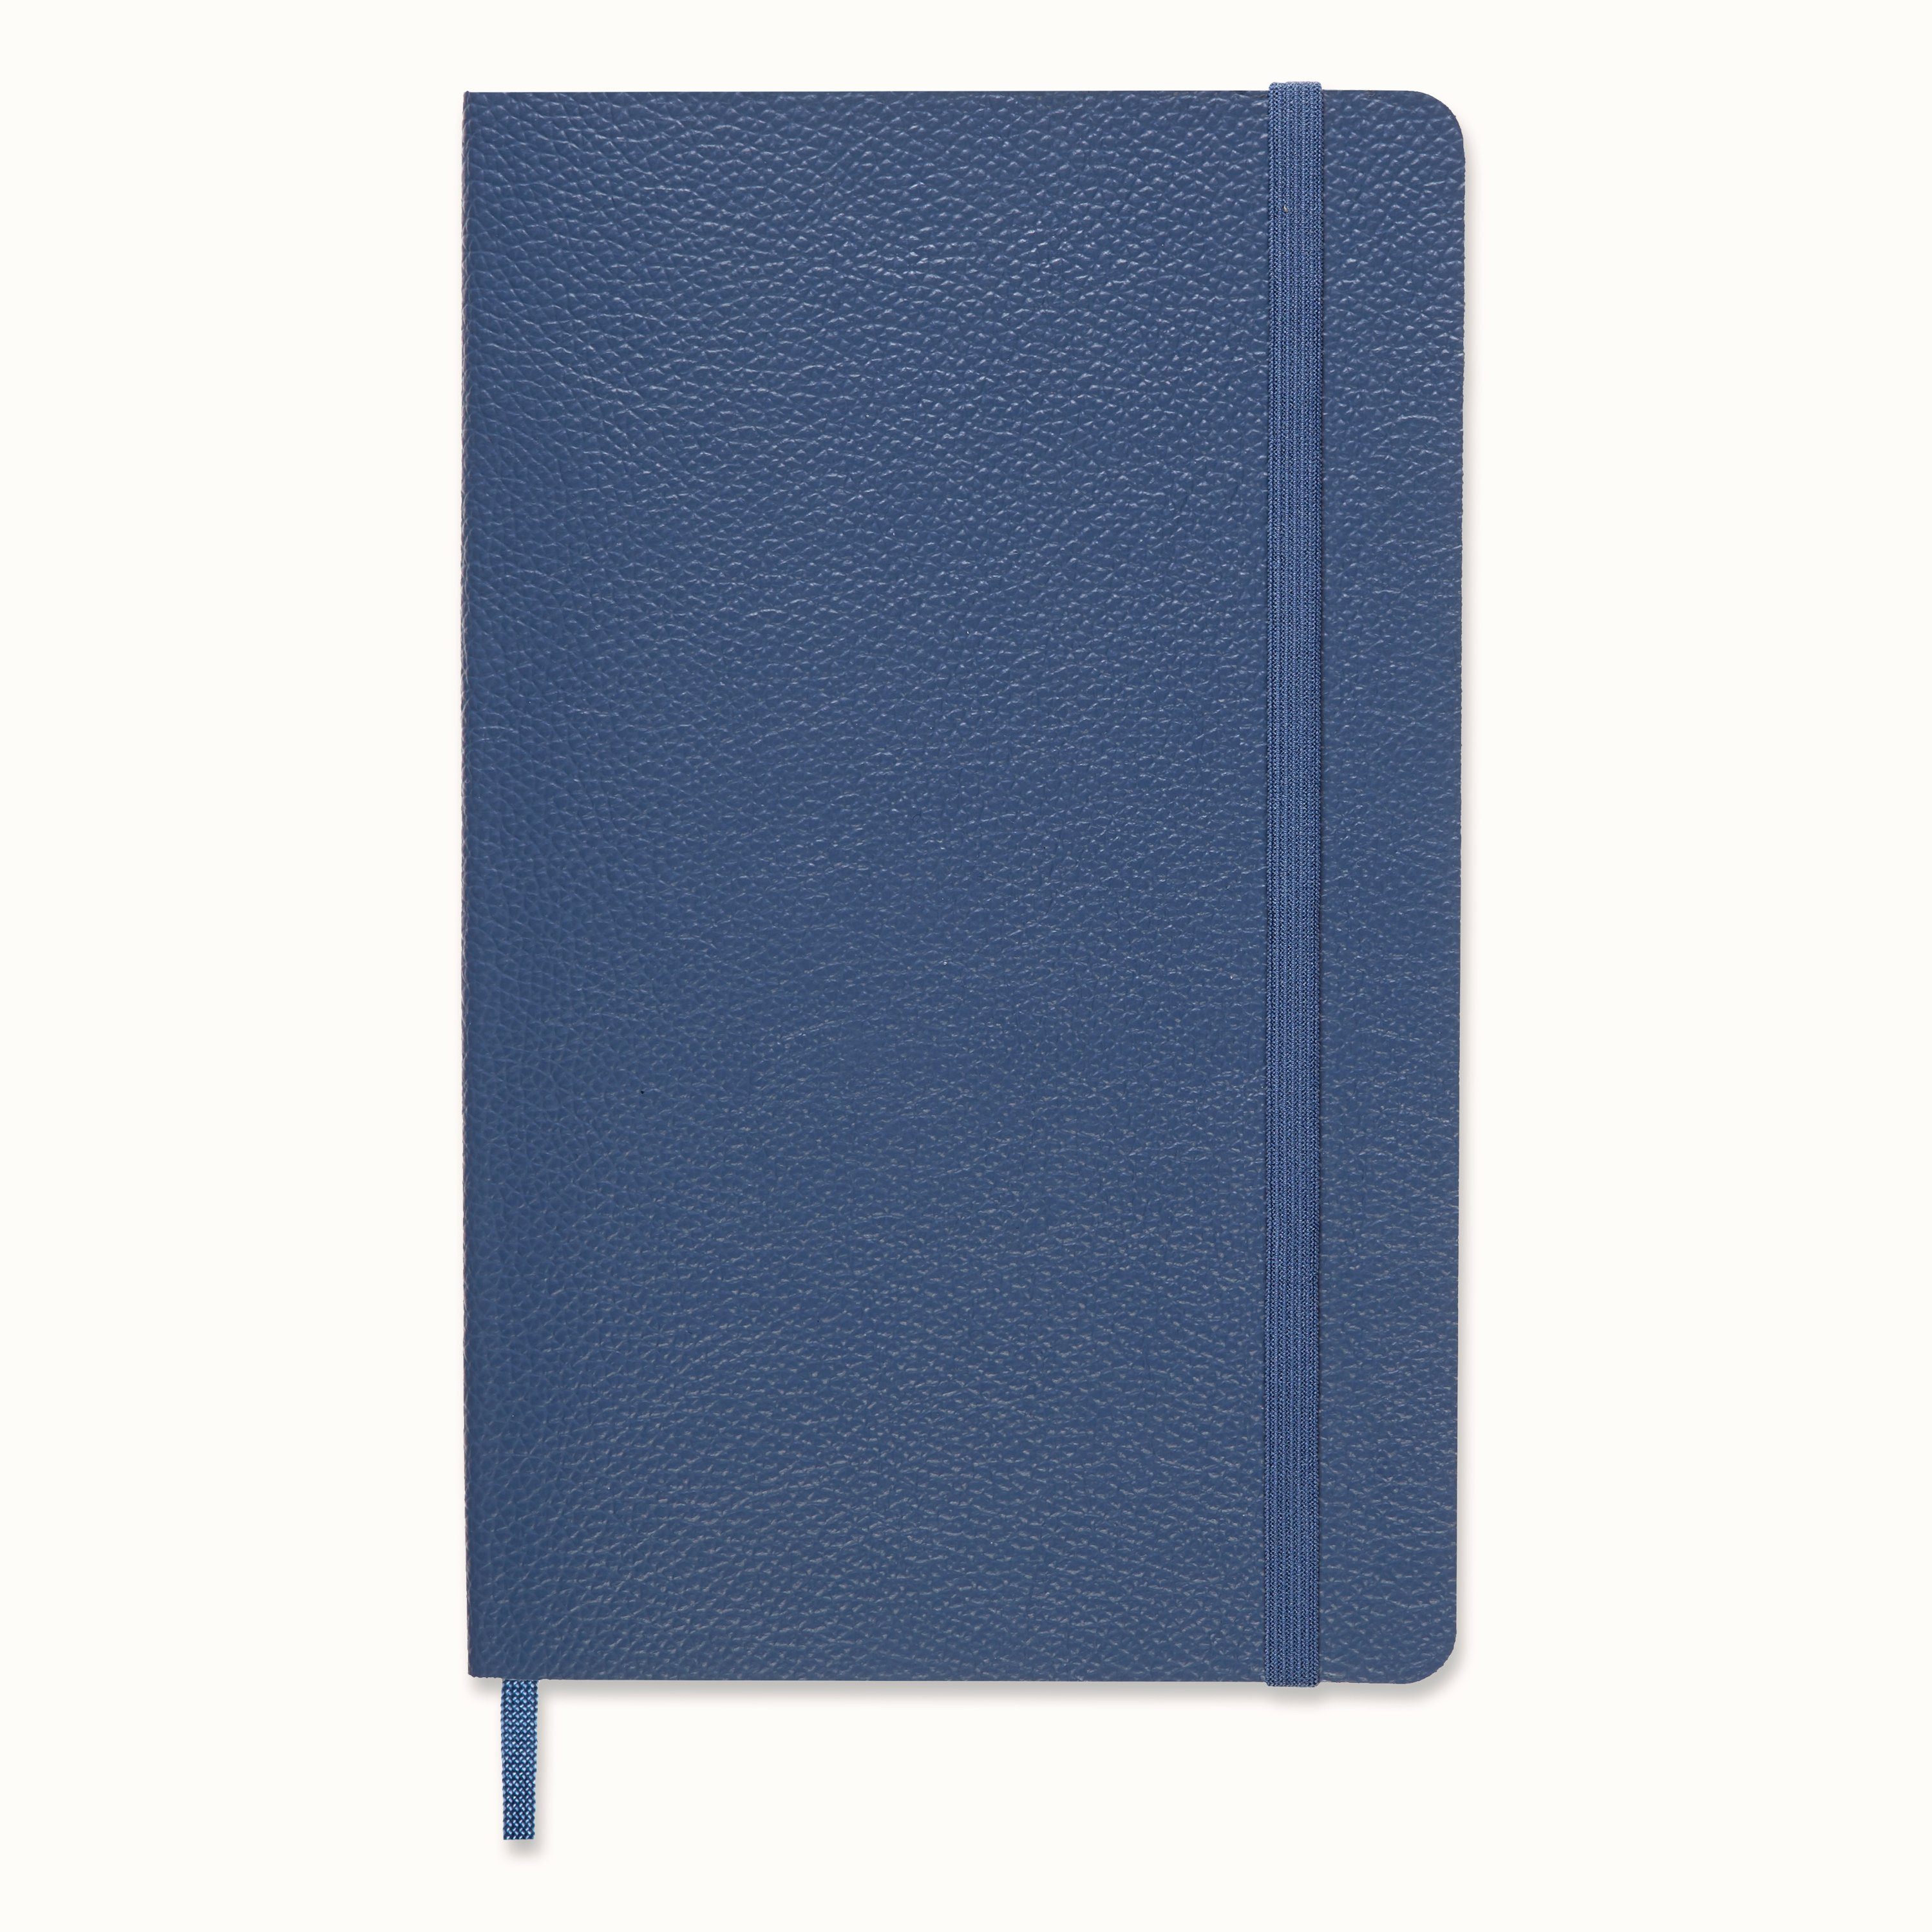 MOLESKINE Notizbuch, Weicher Ledereinband - Groß (13x21) - Liniert - Vergissmeinnicht Blau | Notizbücher